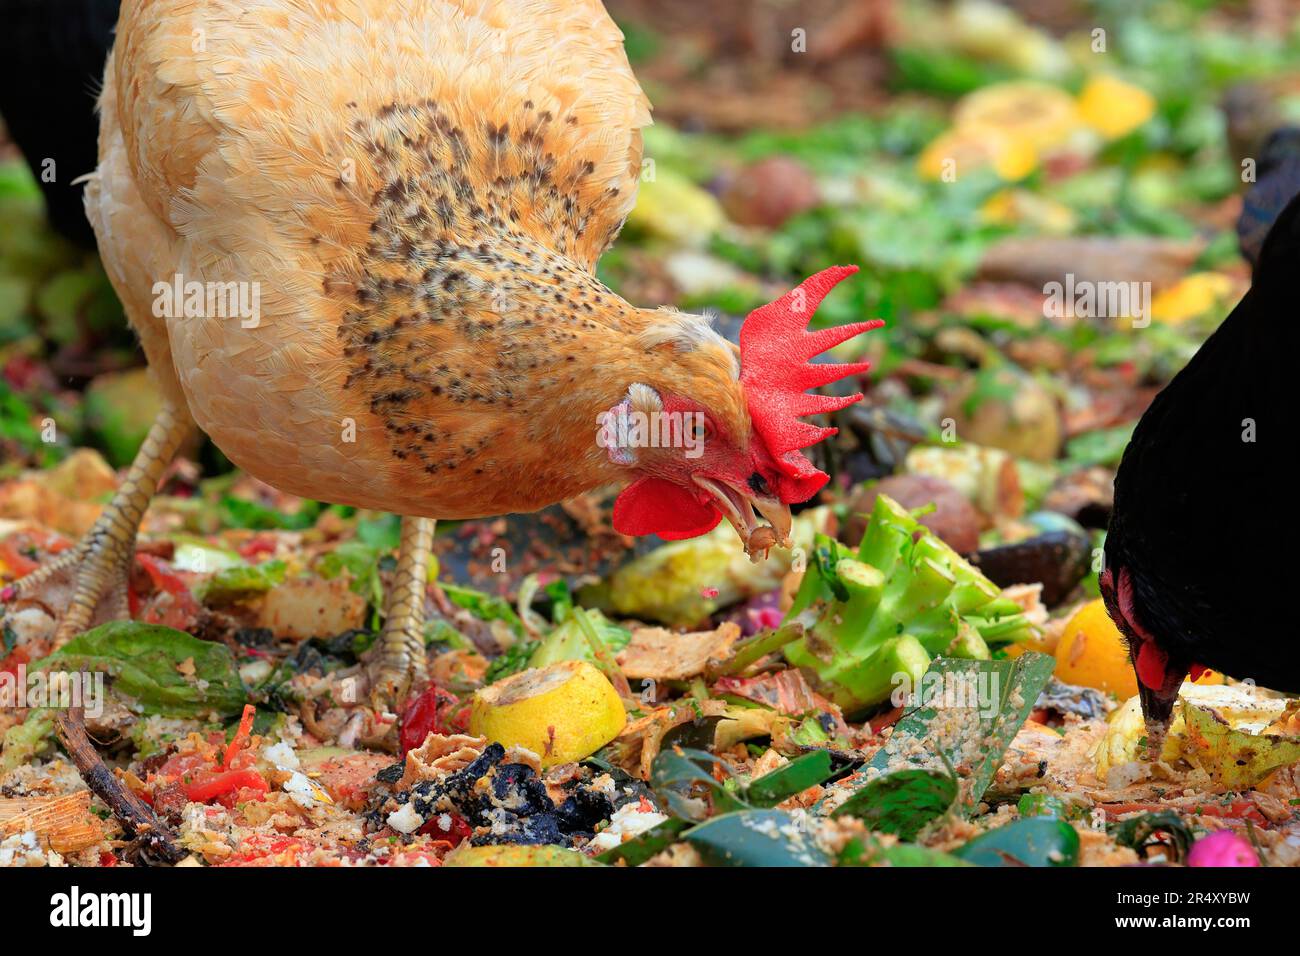 Une poule de poulet rouge du New Hampshire qui se forge à travers les restes de cuisine et de nourriture. Banque D'Images